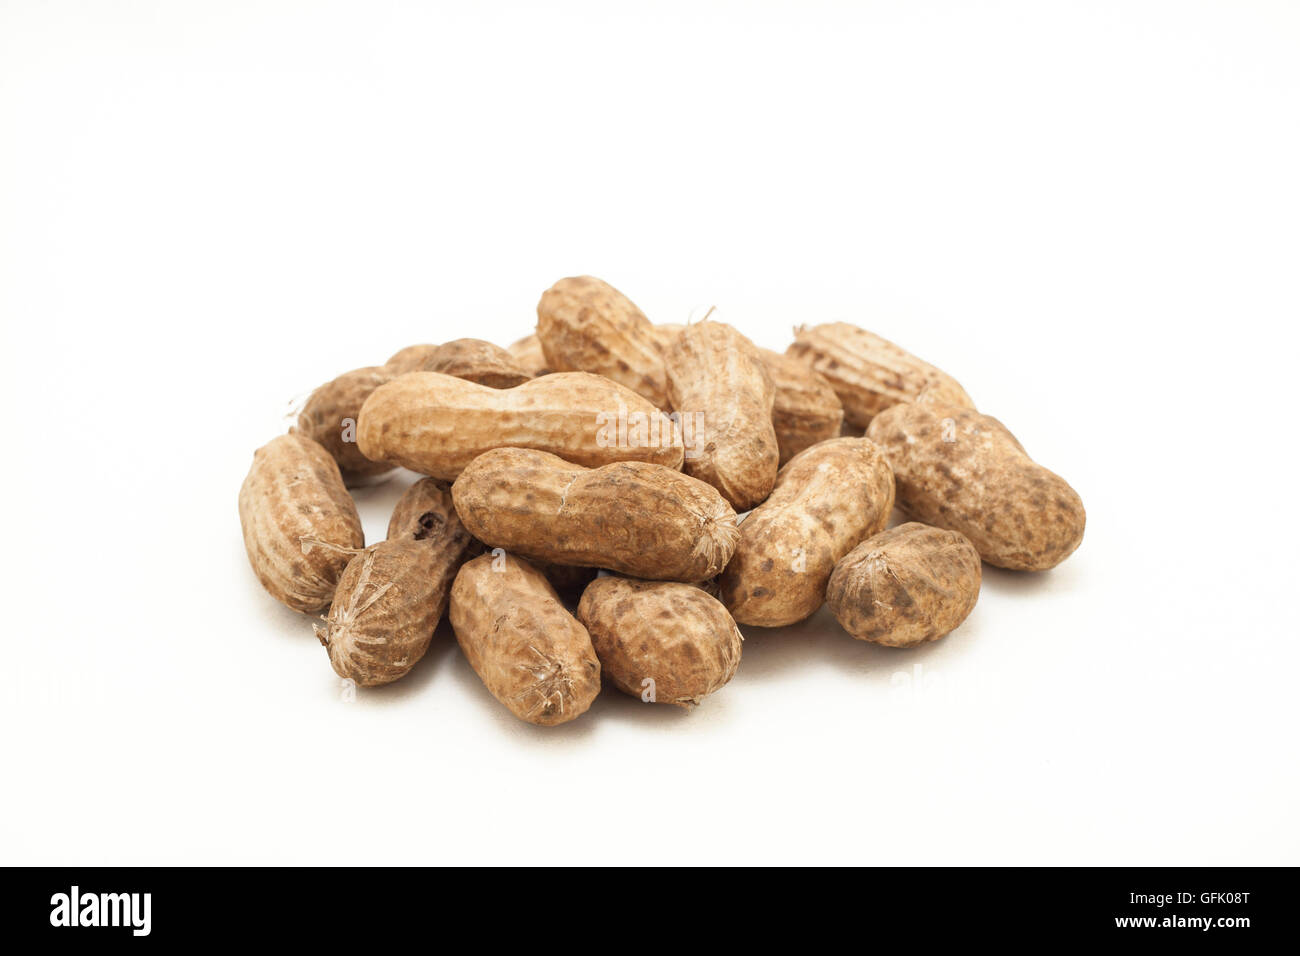 peanut hulls on white isolated background Stock Photo